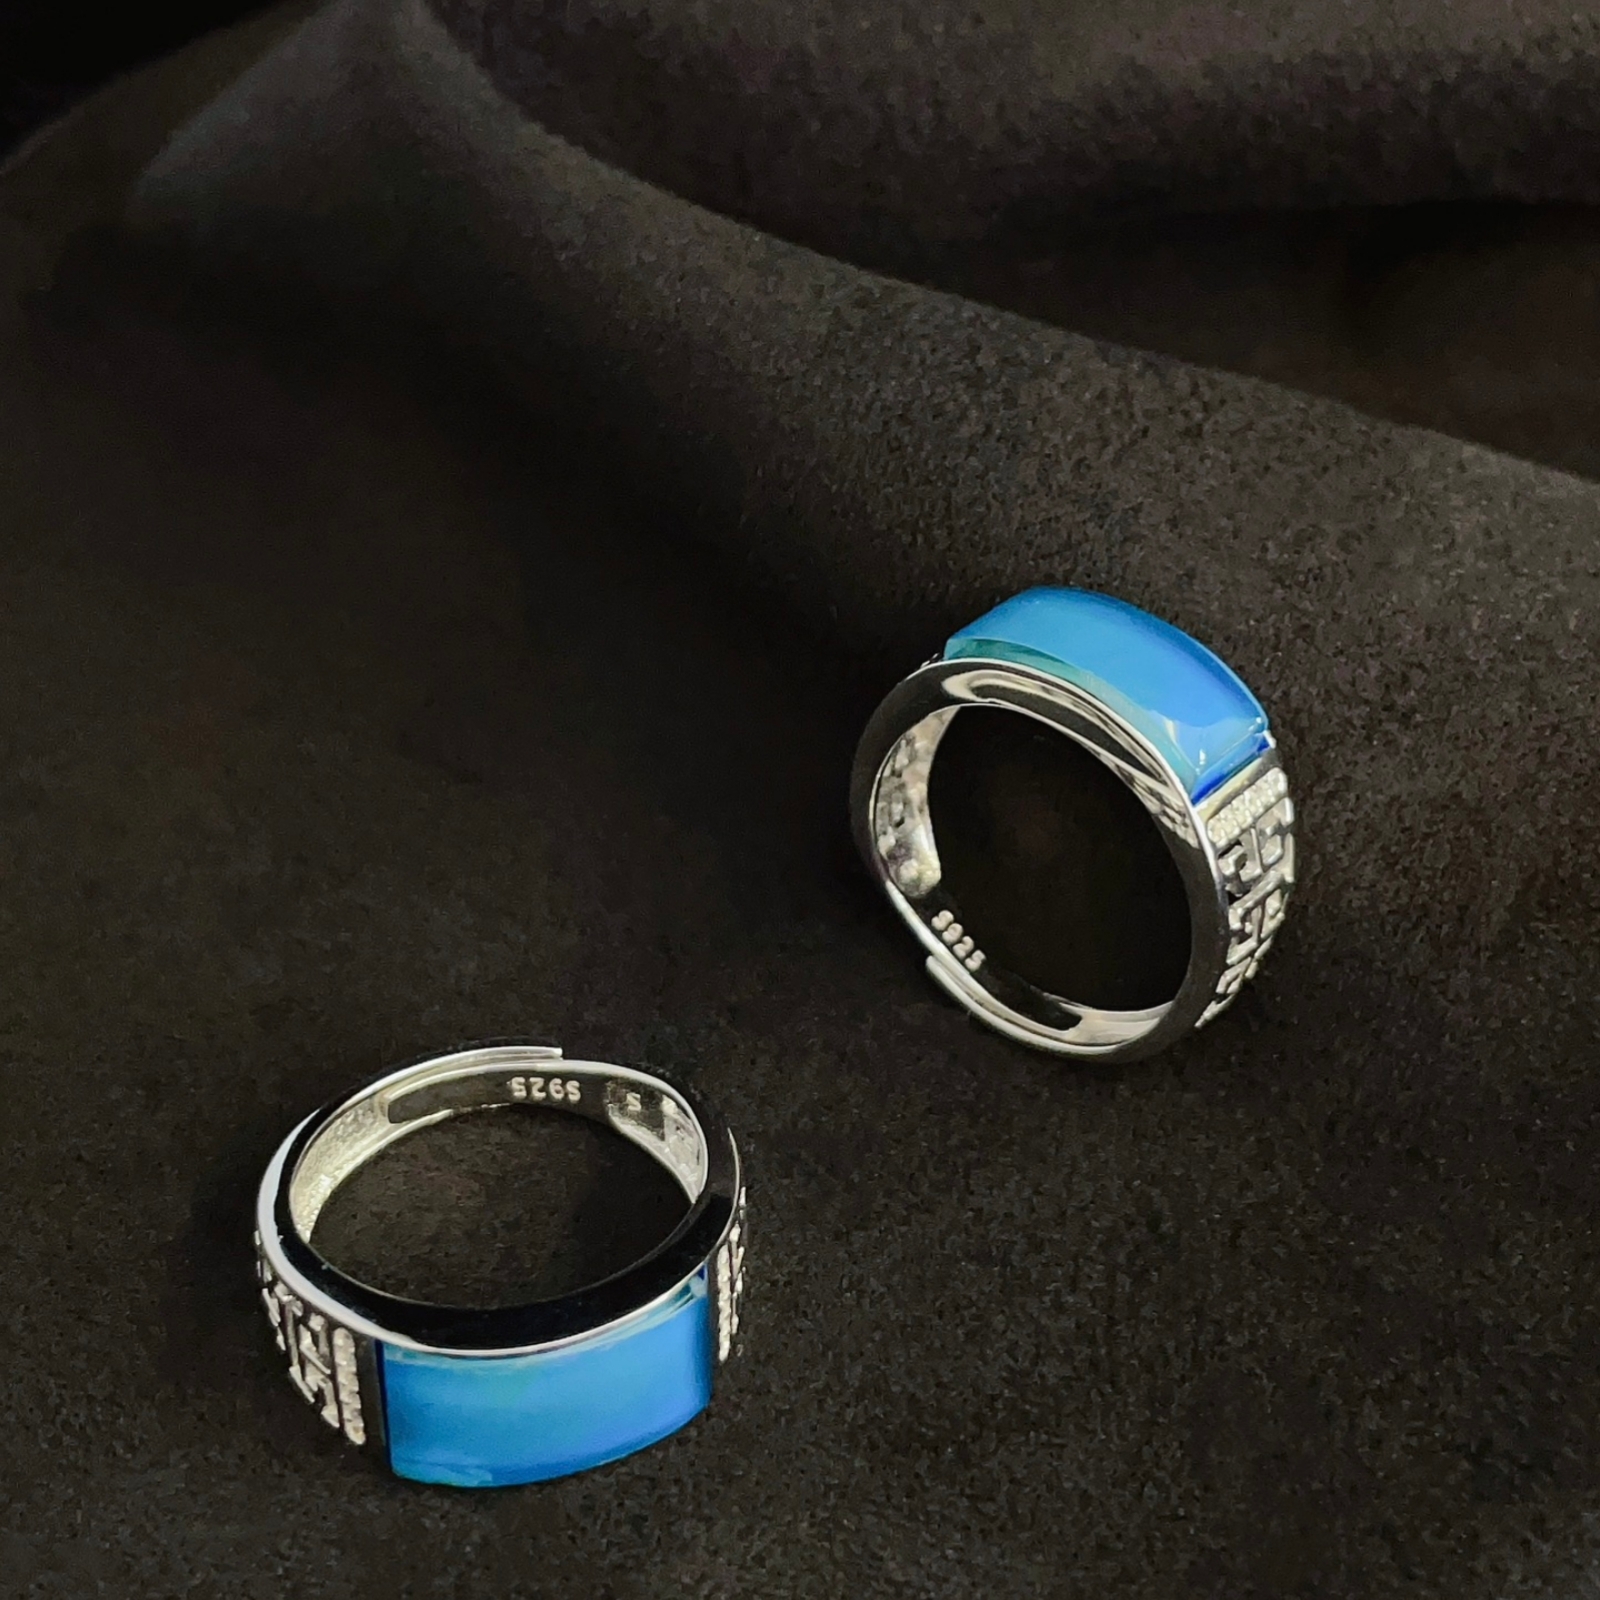 天然墨西哥蓝珀戒指 s925银镶嵌活口时尚琥珀方戒 - 图1